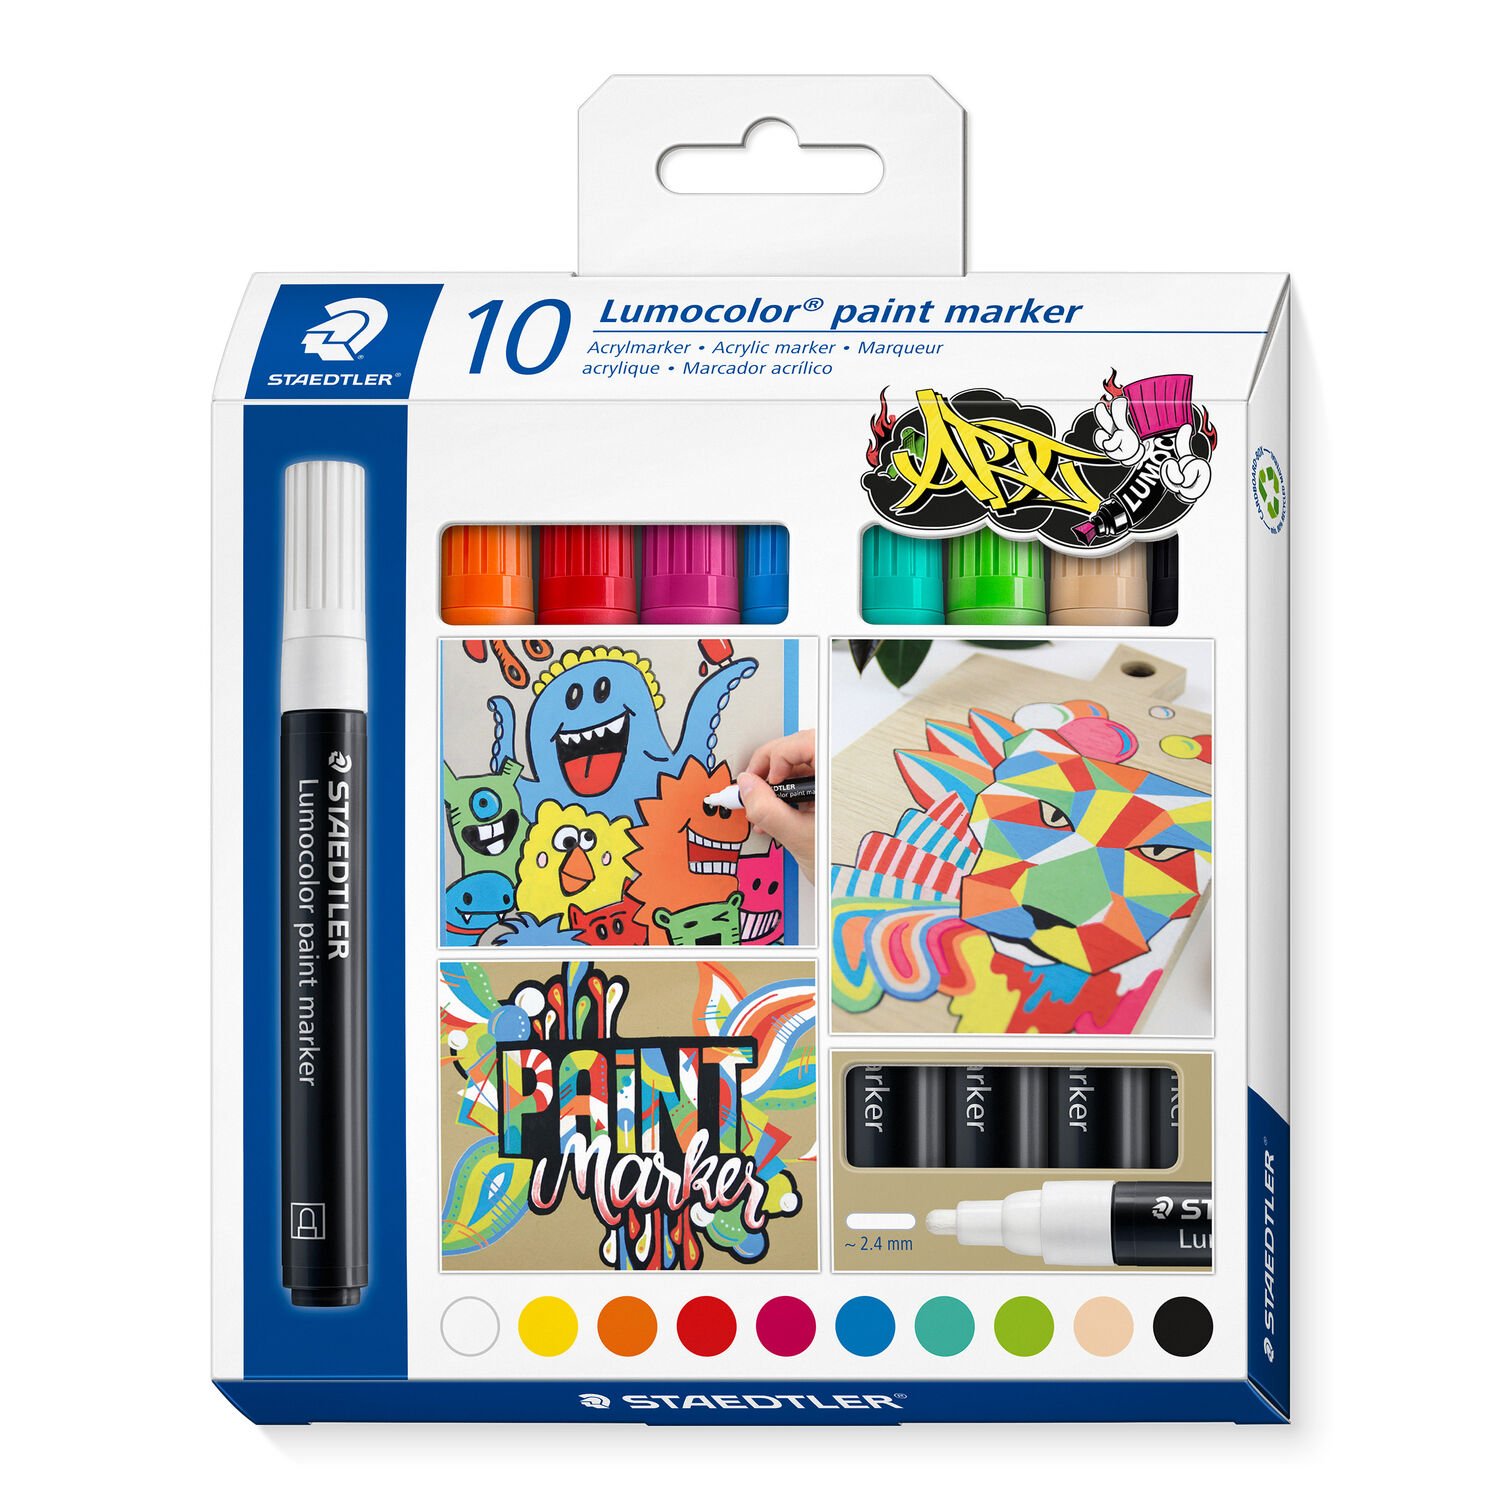 Kartonetui "Lumocolor ART" mit 10 Lumocolor paint marker in sortierten Farben